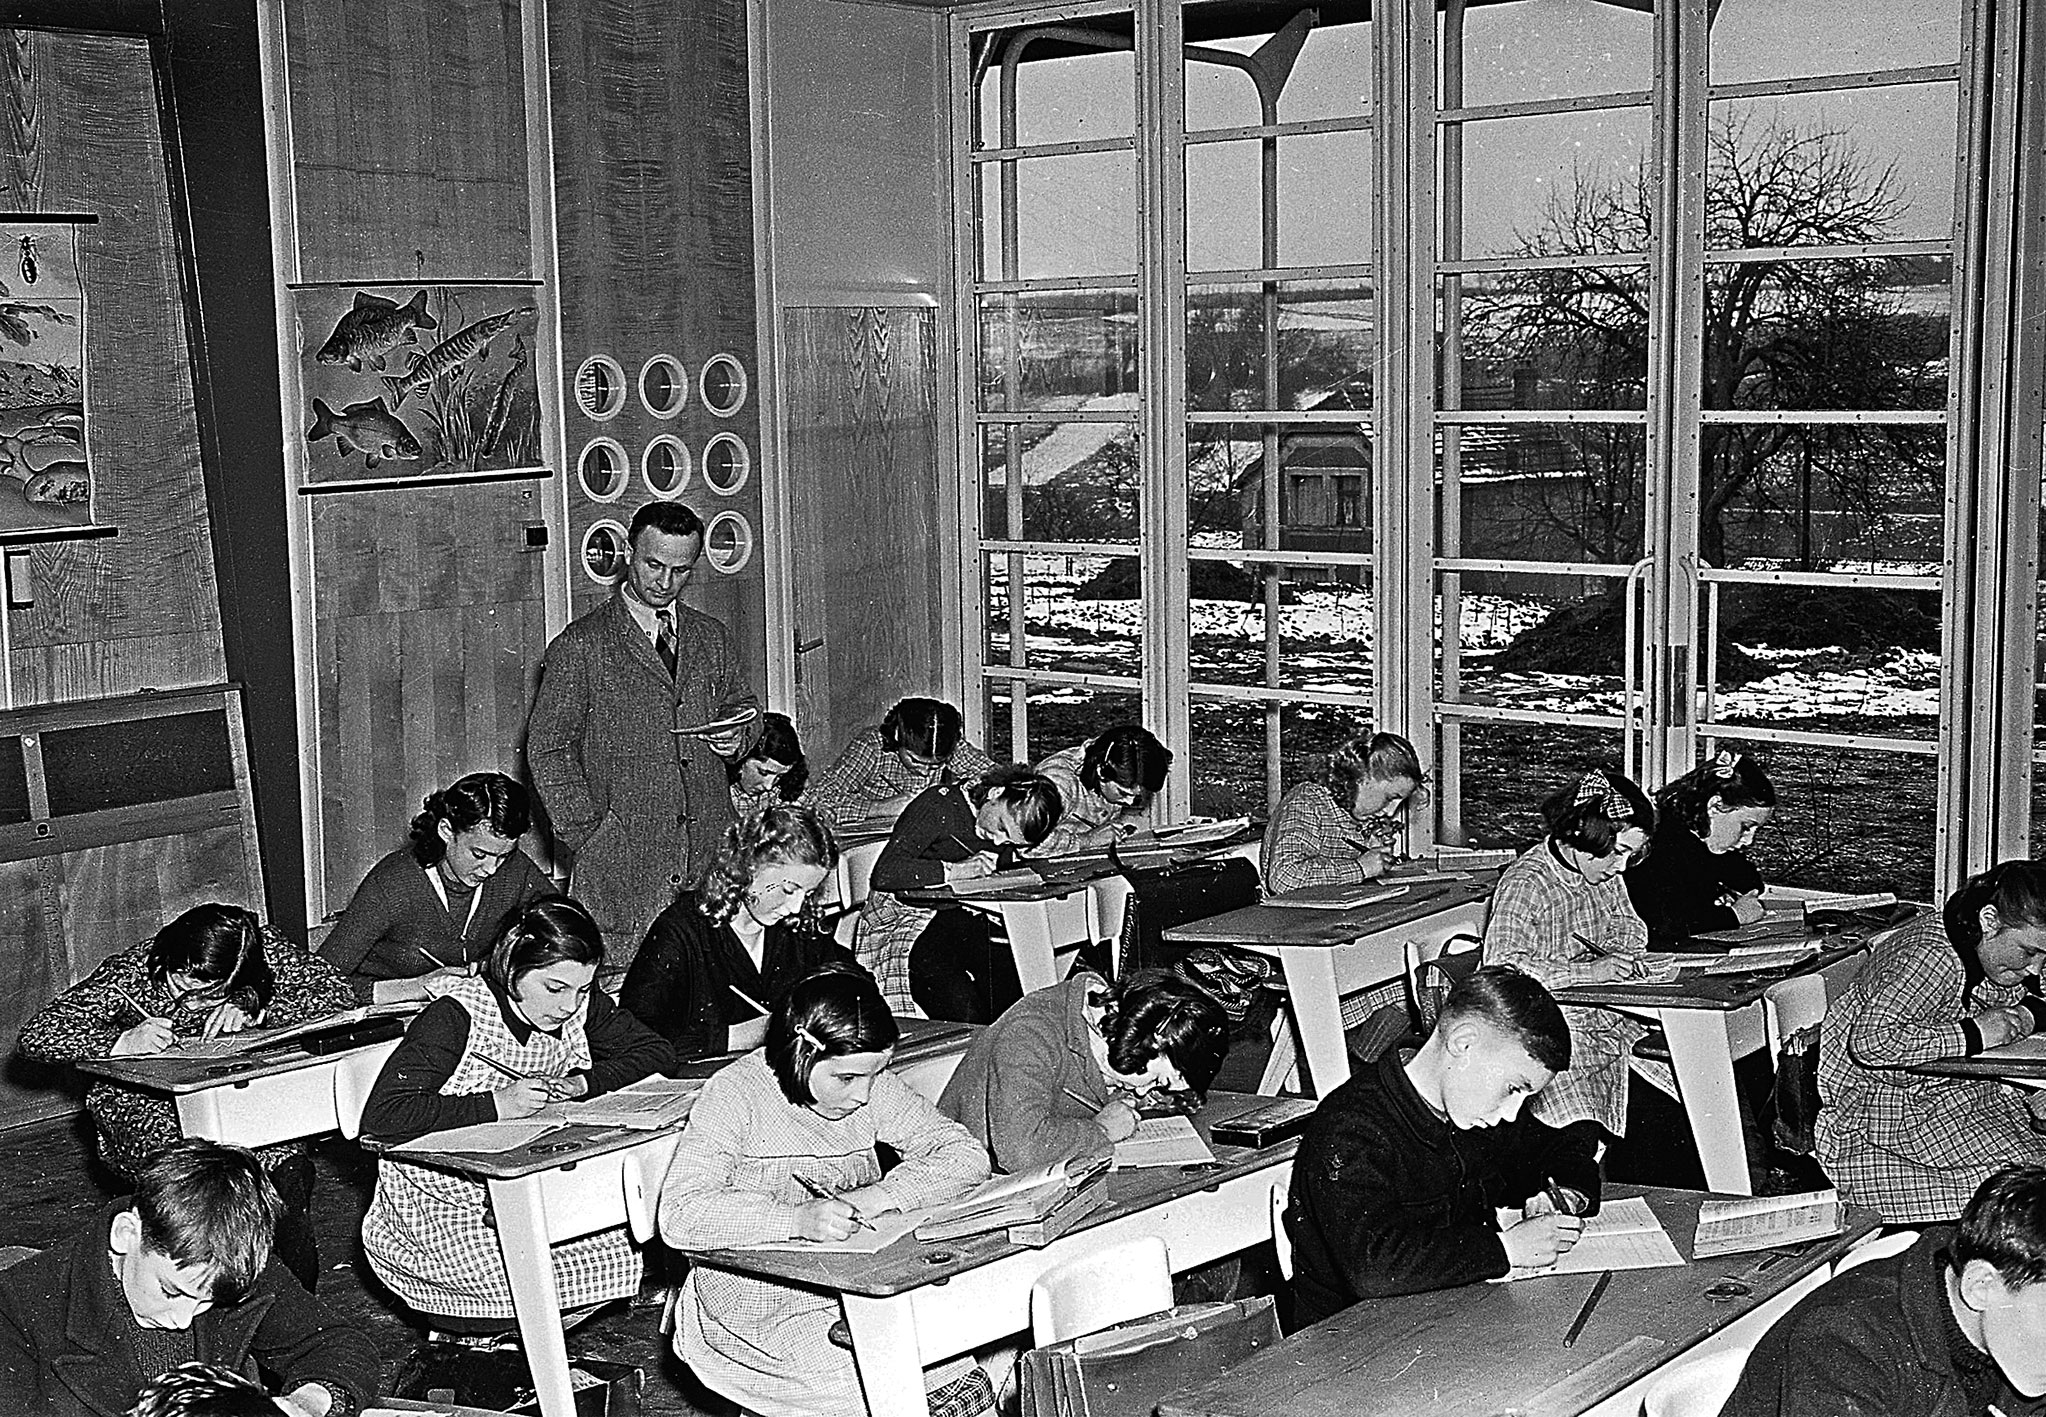 École prototype de Vantoux (H. Prouvé, arch., 1950). Classe meublée avec des pupitres PG 11.